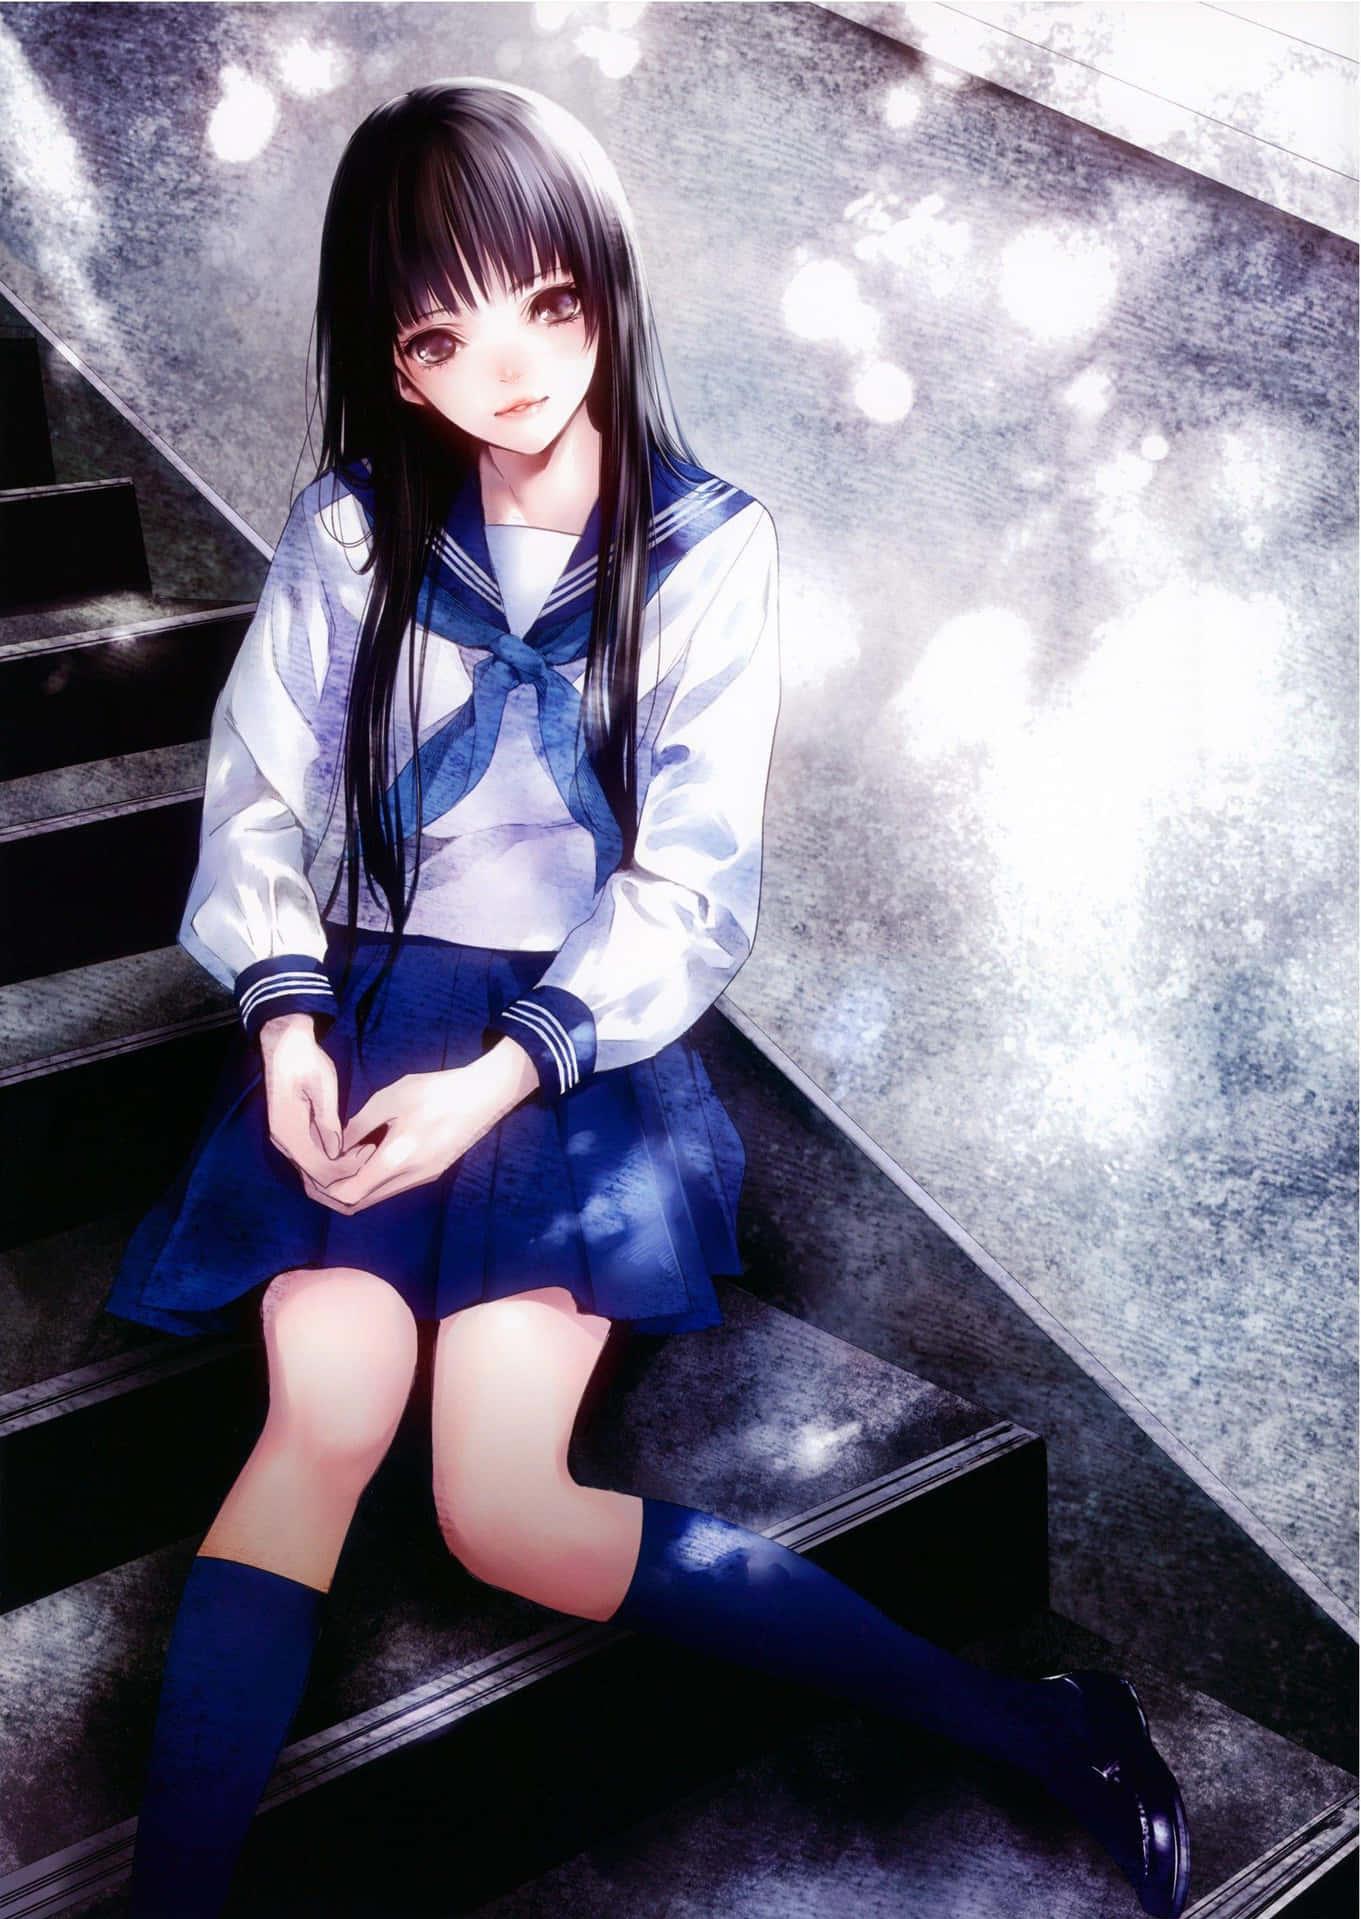 Download Japanese School Anime Girl Wallpaper